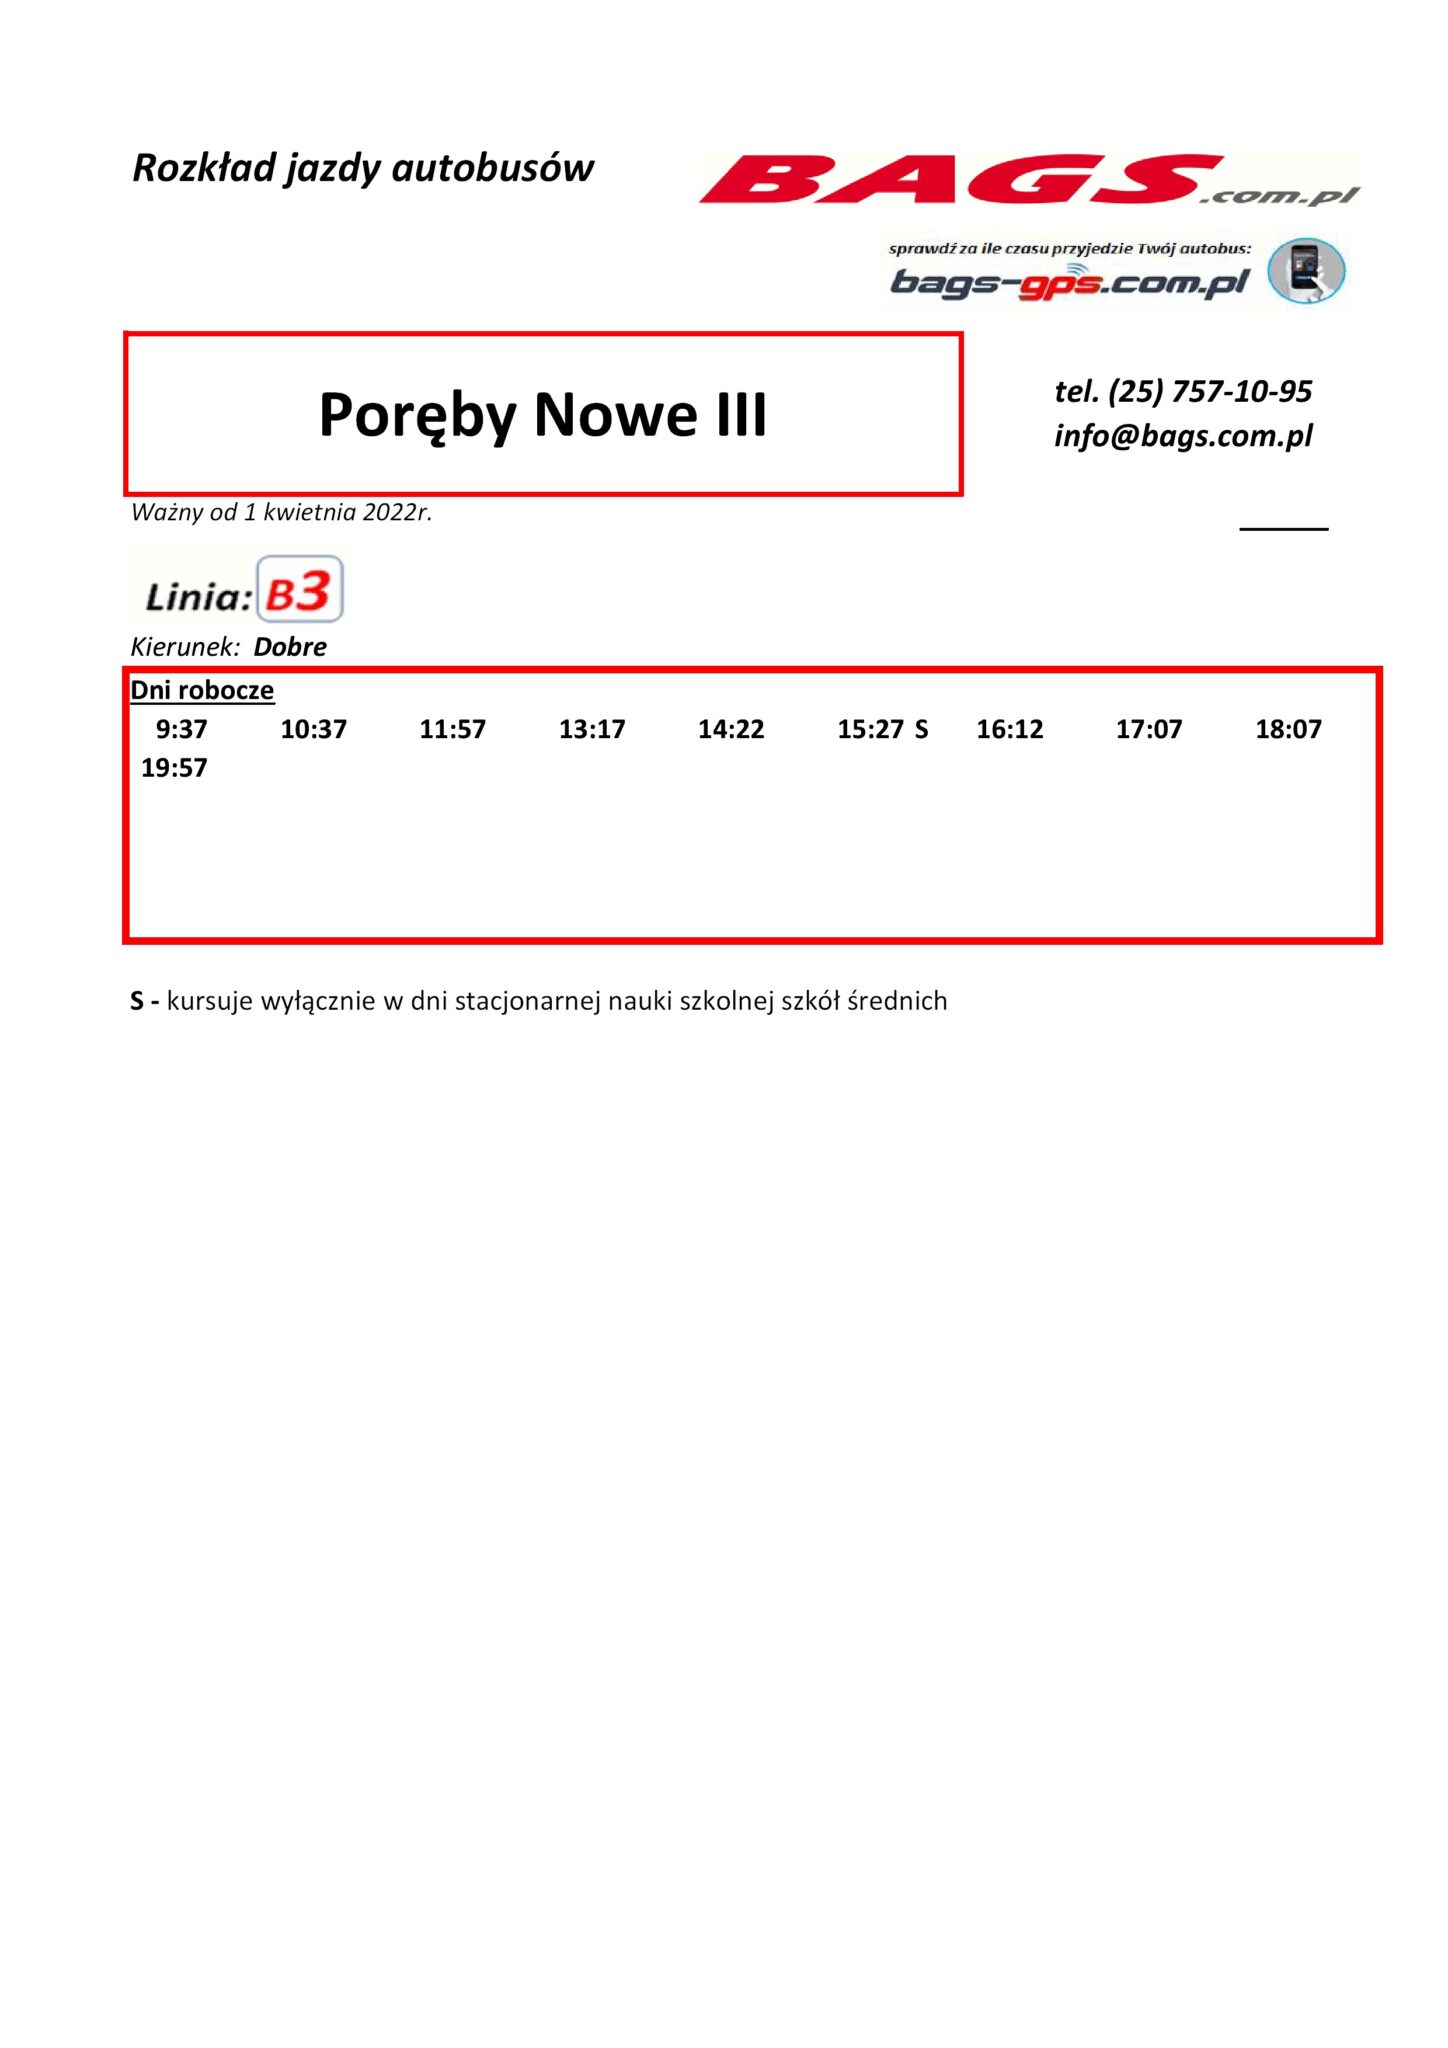 Poreby-Nowe-III-1-3-1448x2048